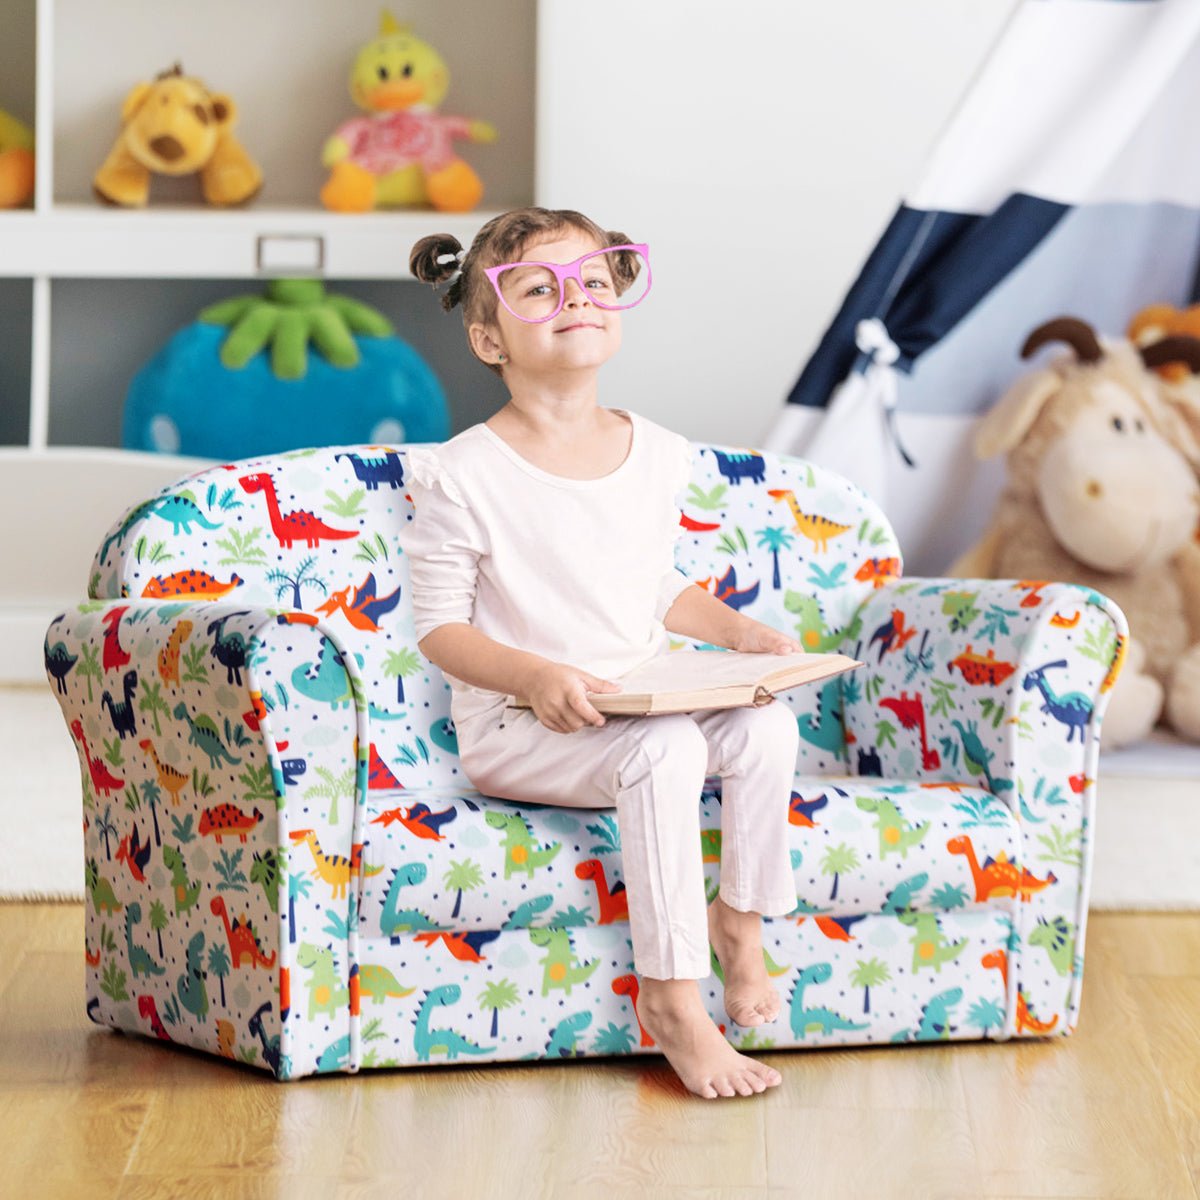 Tender Luxury: Velvet Kids Sofa with Adorable Pattern for Baby's Room